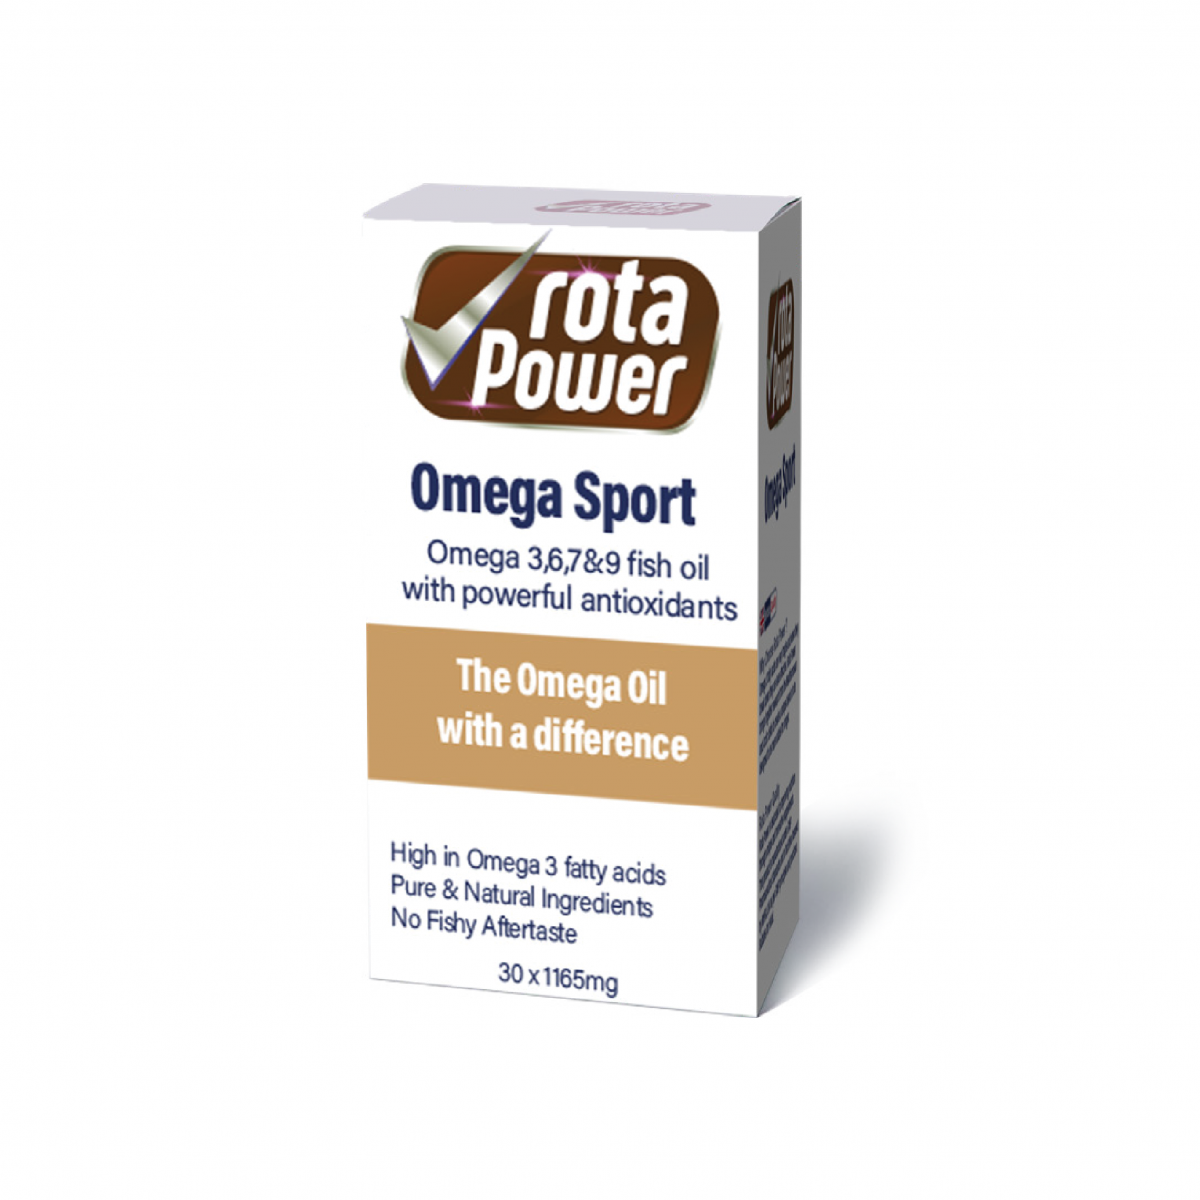 rota power omega sport